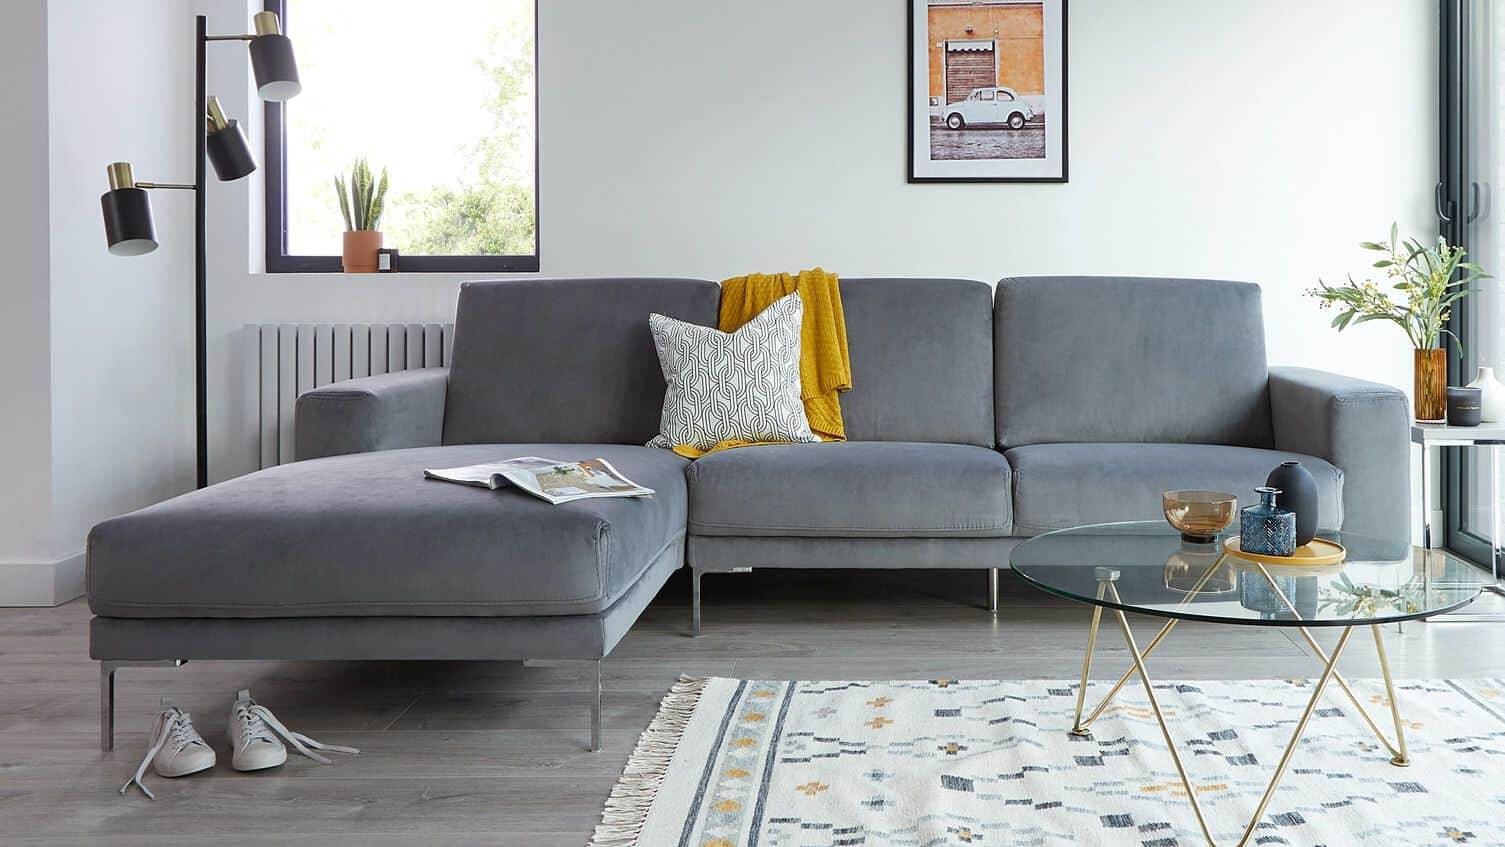 
Nếu gia đình bạn muốn sử dụng sofa vải, nỉ lâu dài thì nên cẩn thận rất nhiều trong sinh hoạt hàng ngà
